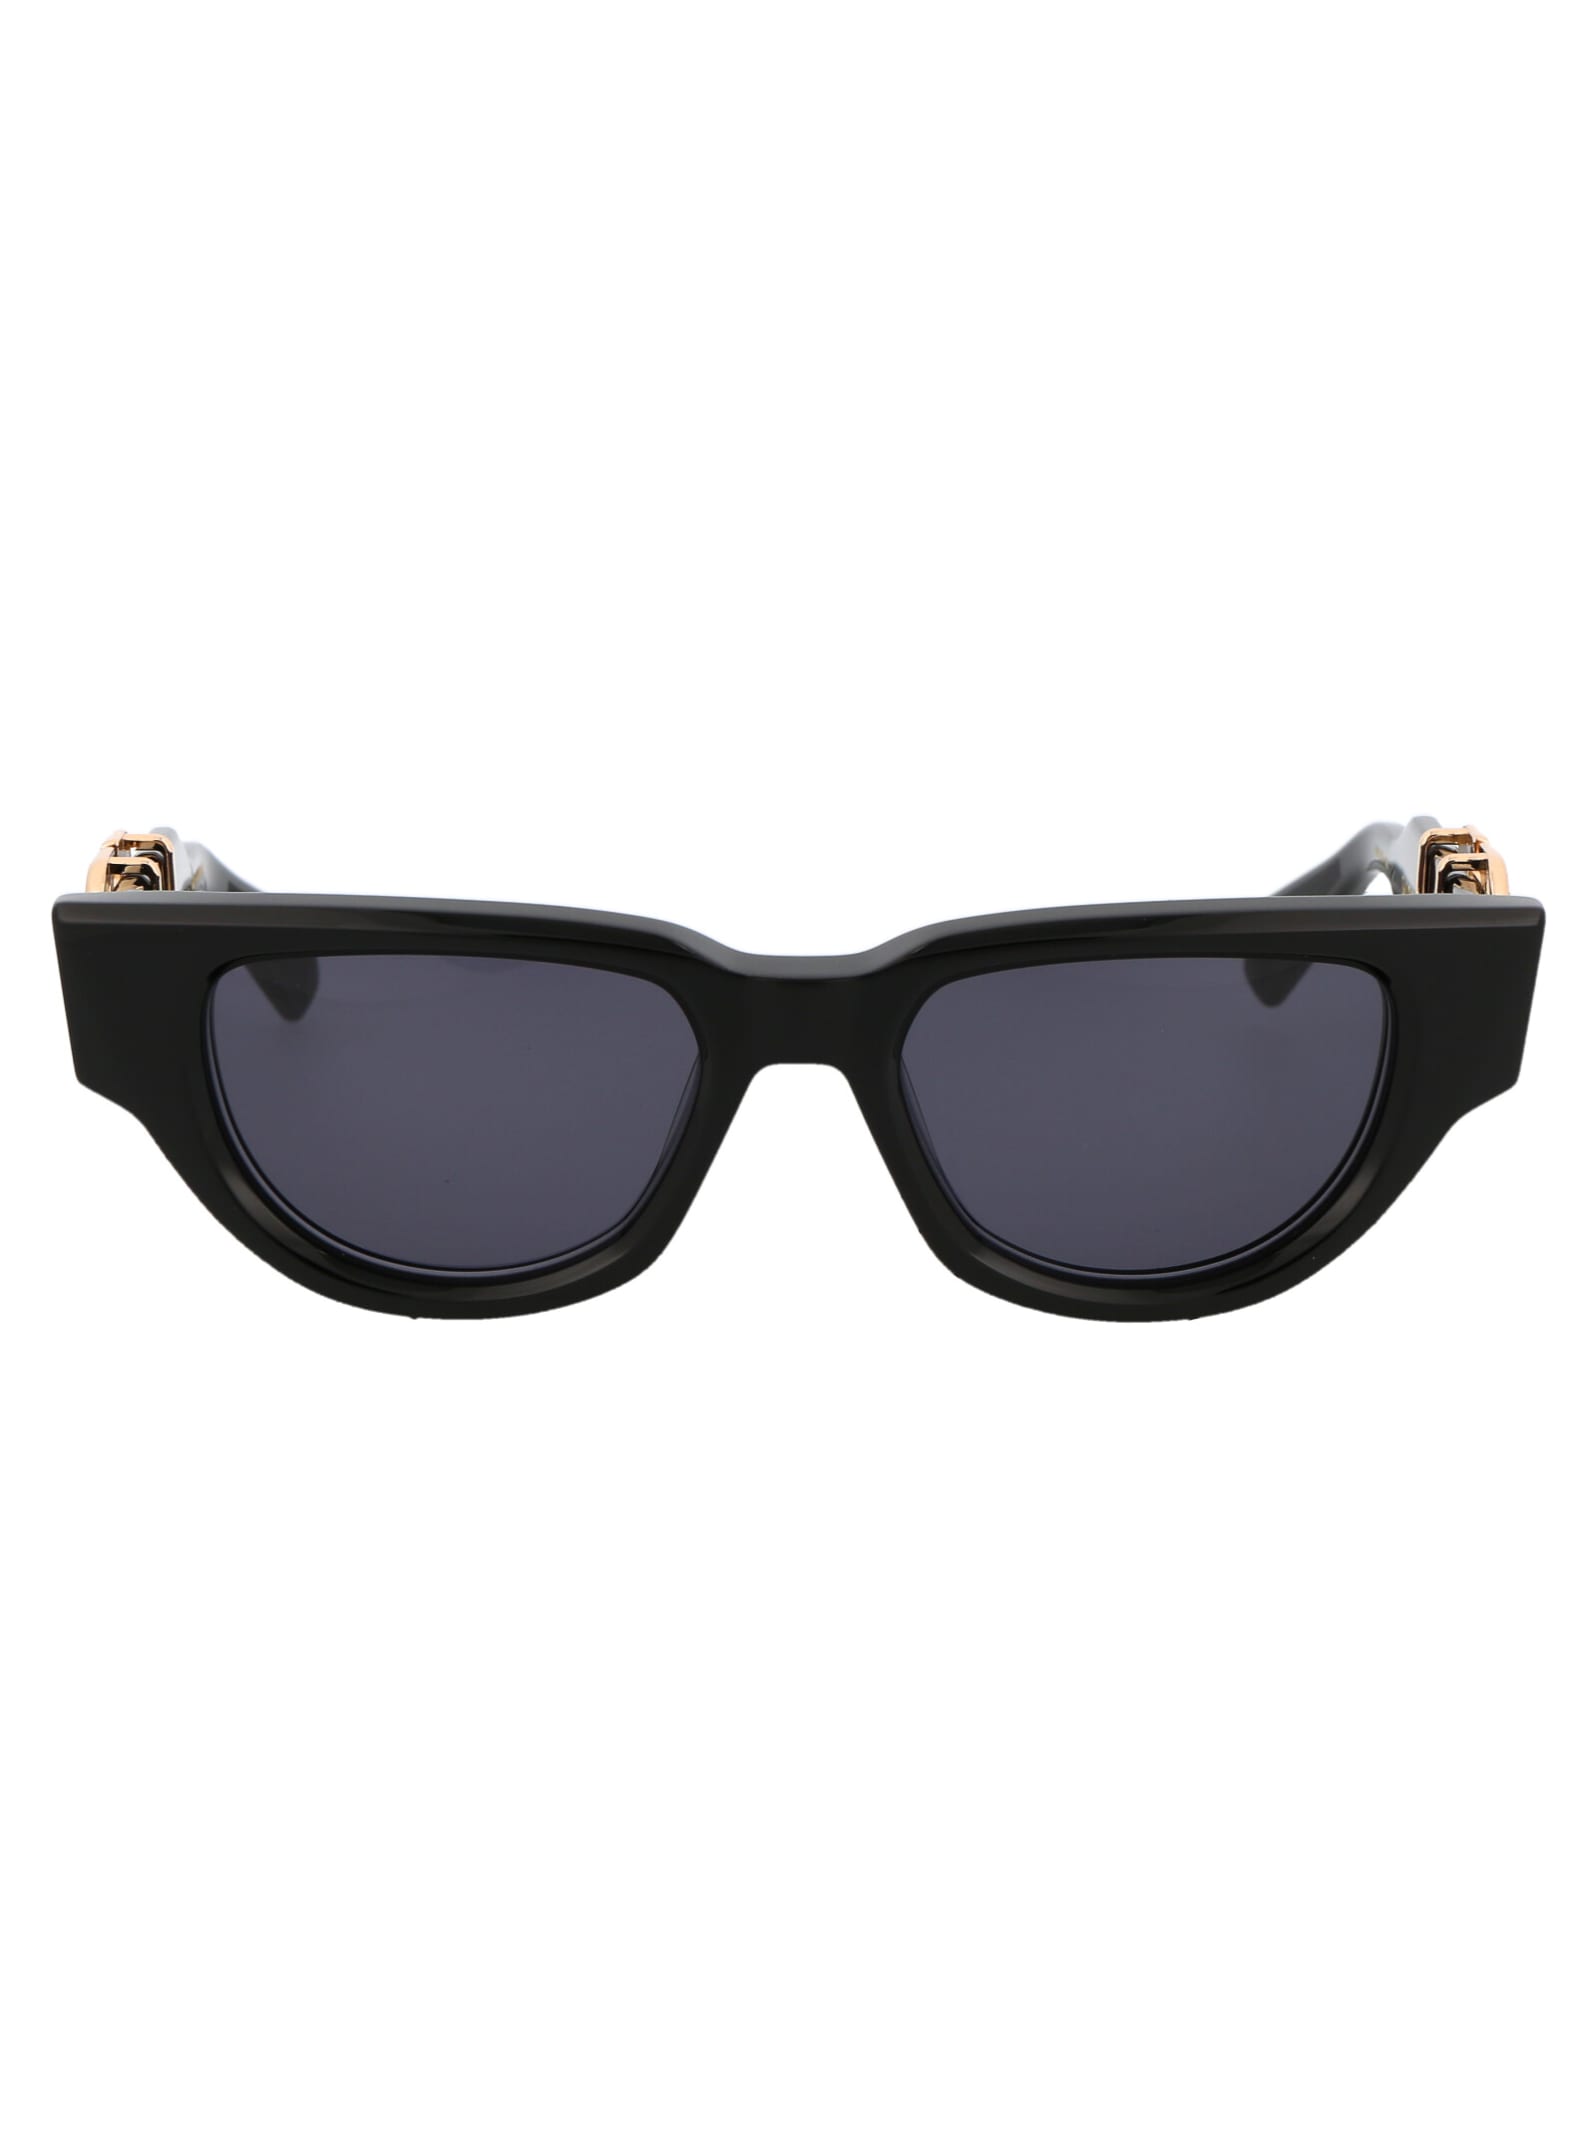 Valentino V - Due Sunglasses In 103a Blk - Gld